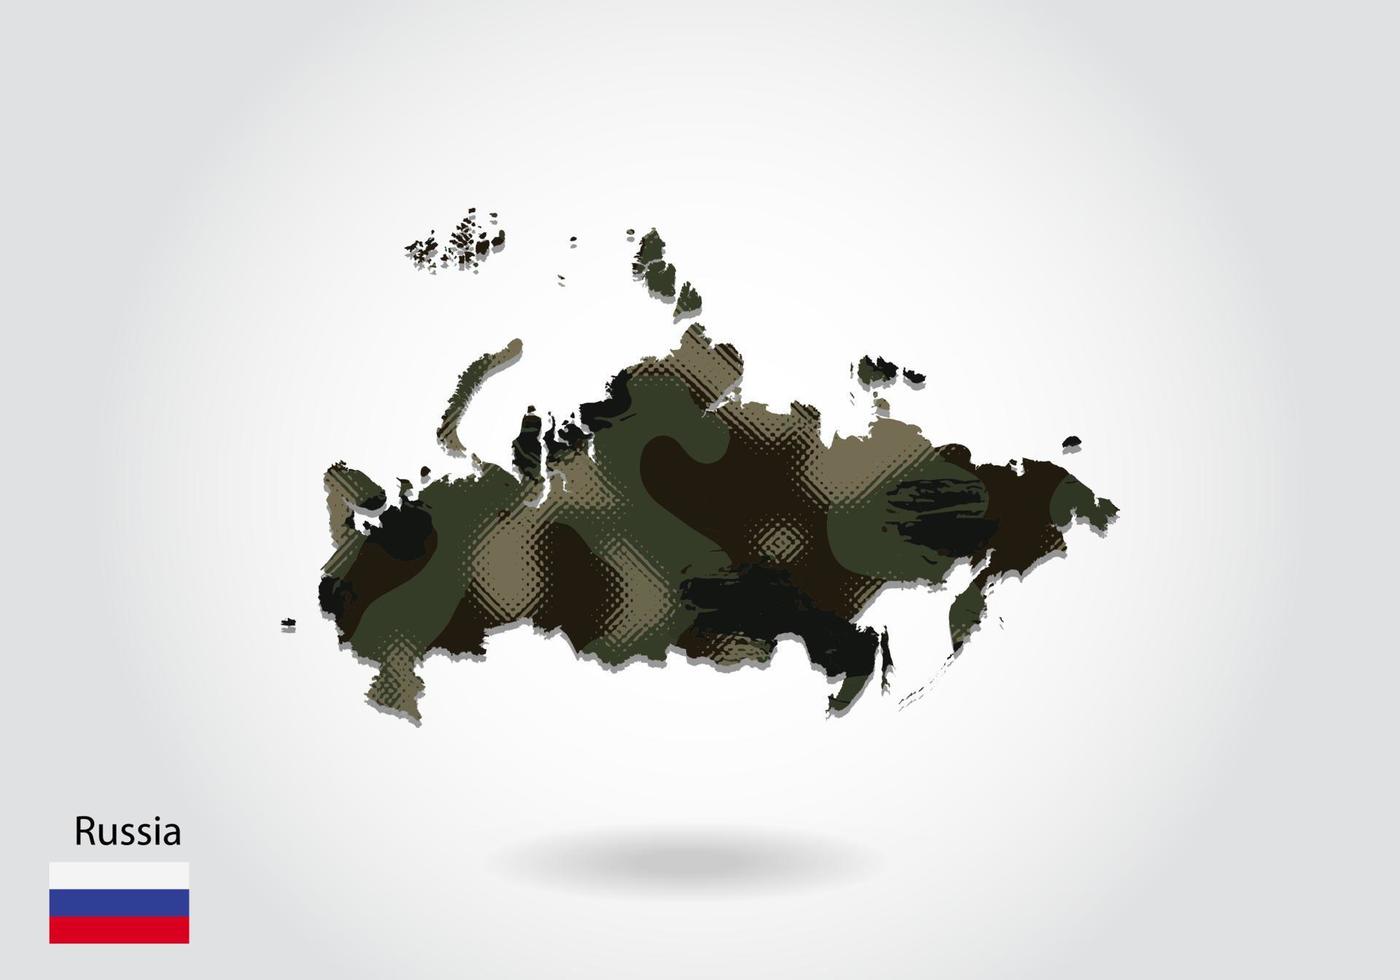 carte de la russie avec motif camouflage, forêt - texture verte sur la carte. concept militaire pour l'armée, le soldat et la guerre. armoiries, drapeau. vecteur